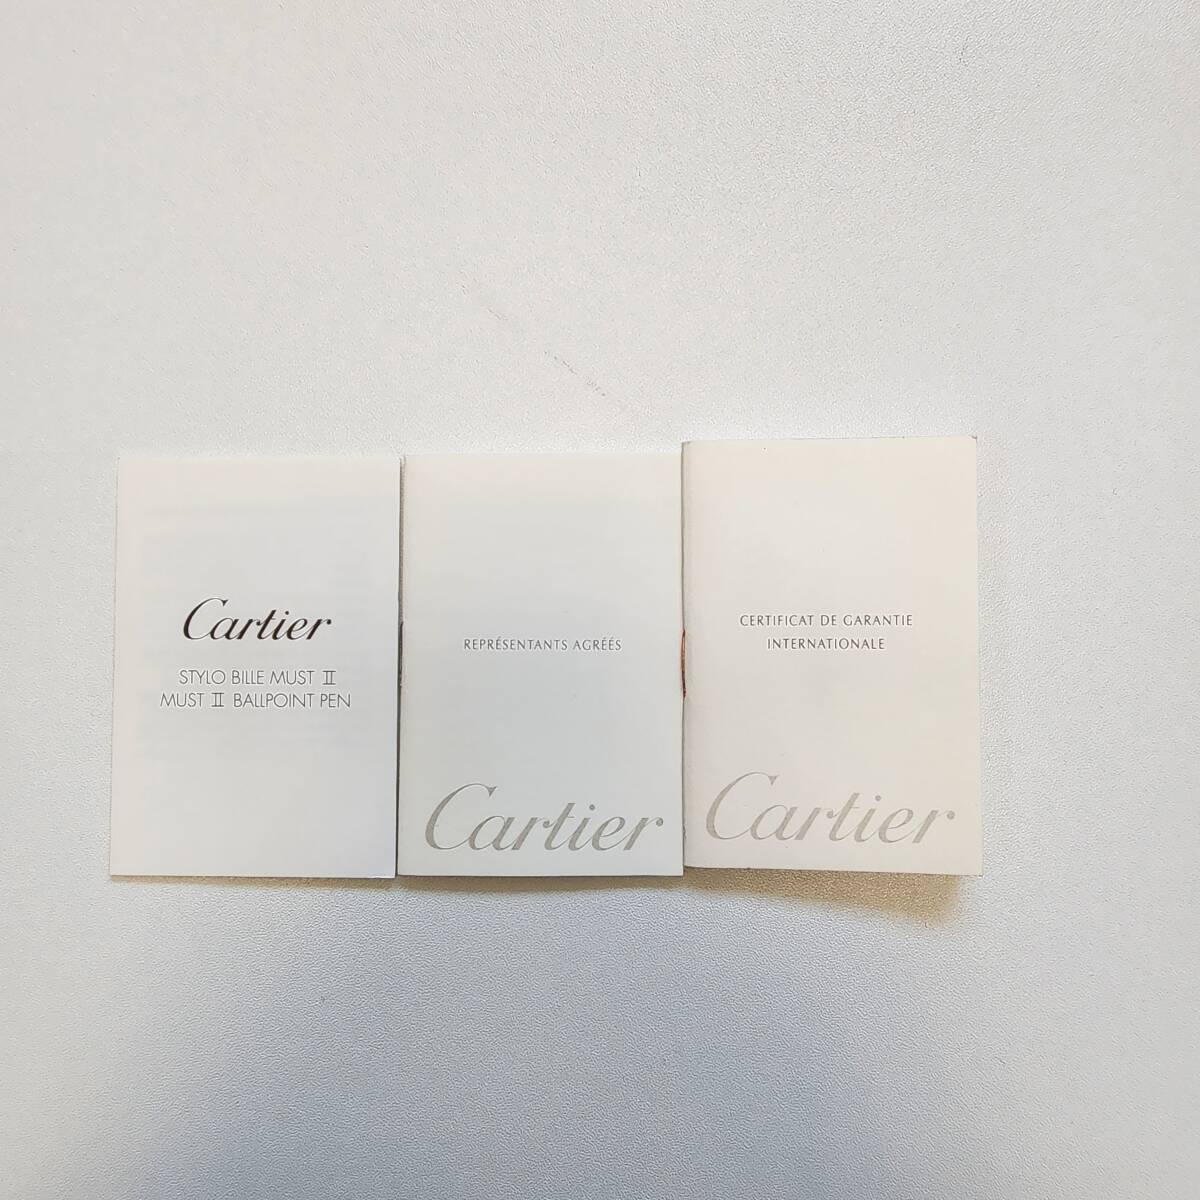 美品 Cartier カルティエ マスト ボールペン ツイスト式 筆記確認済み ケース付 ブラック ゴールドカラー 筆記具 筆記用具_画像9